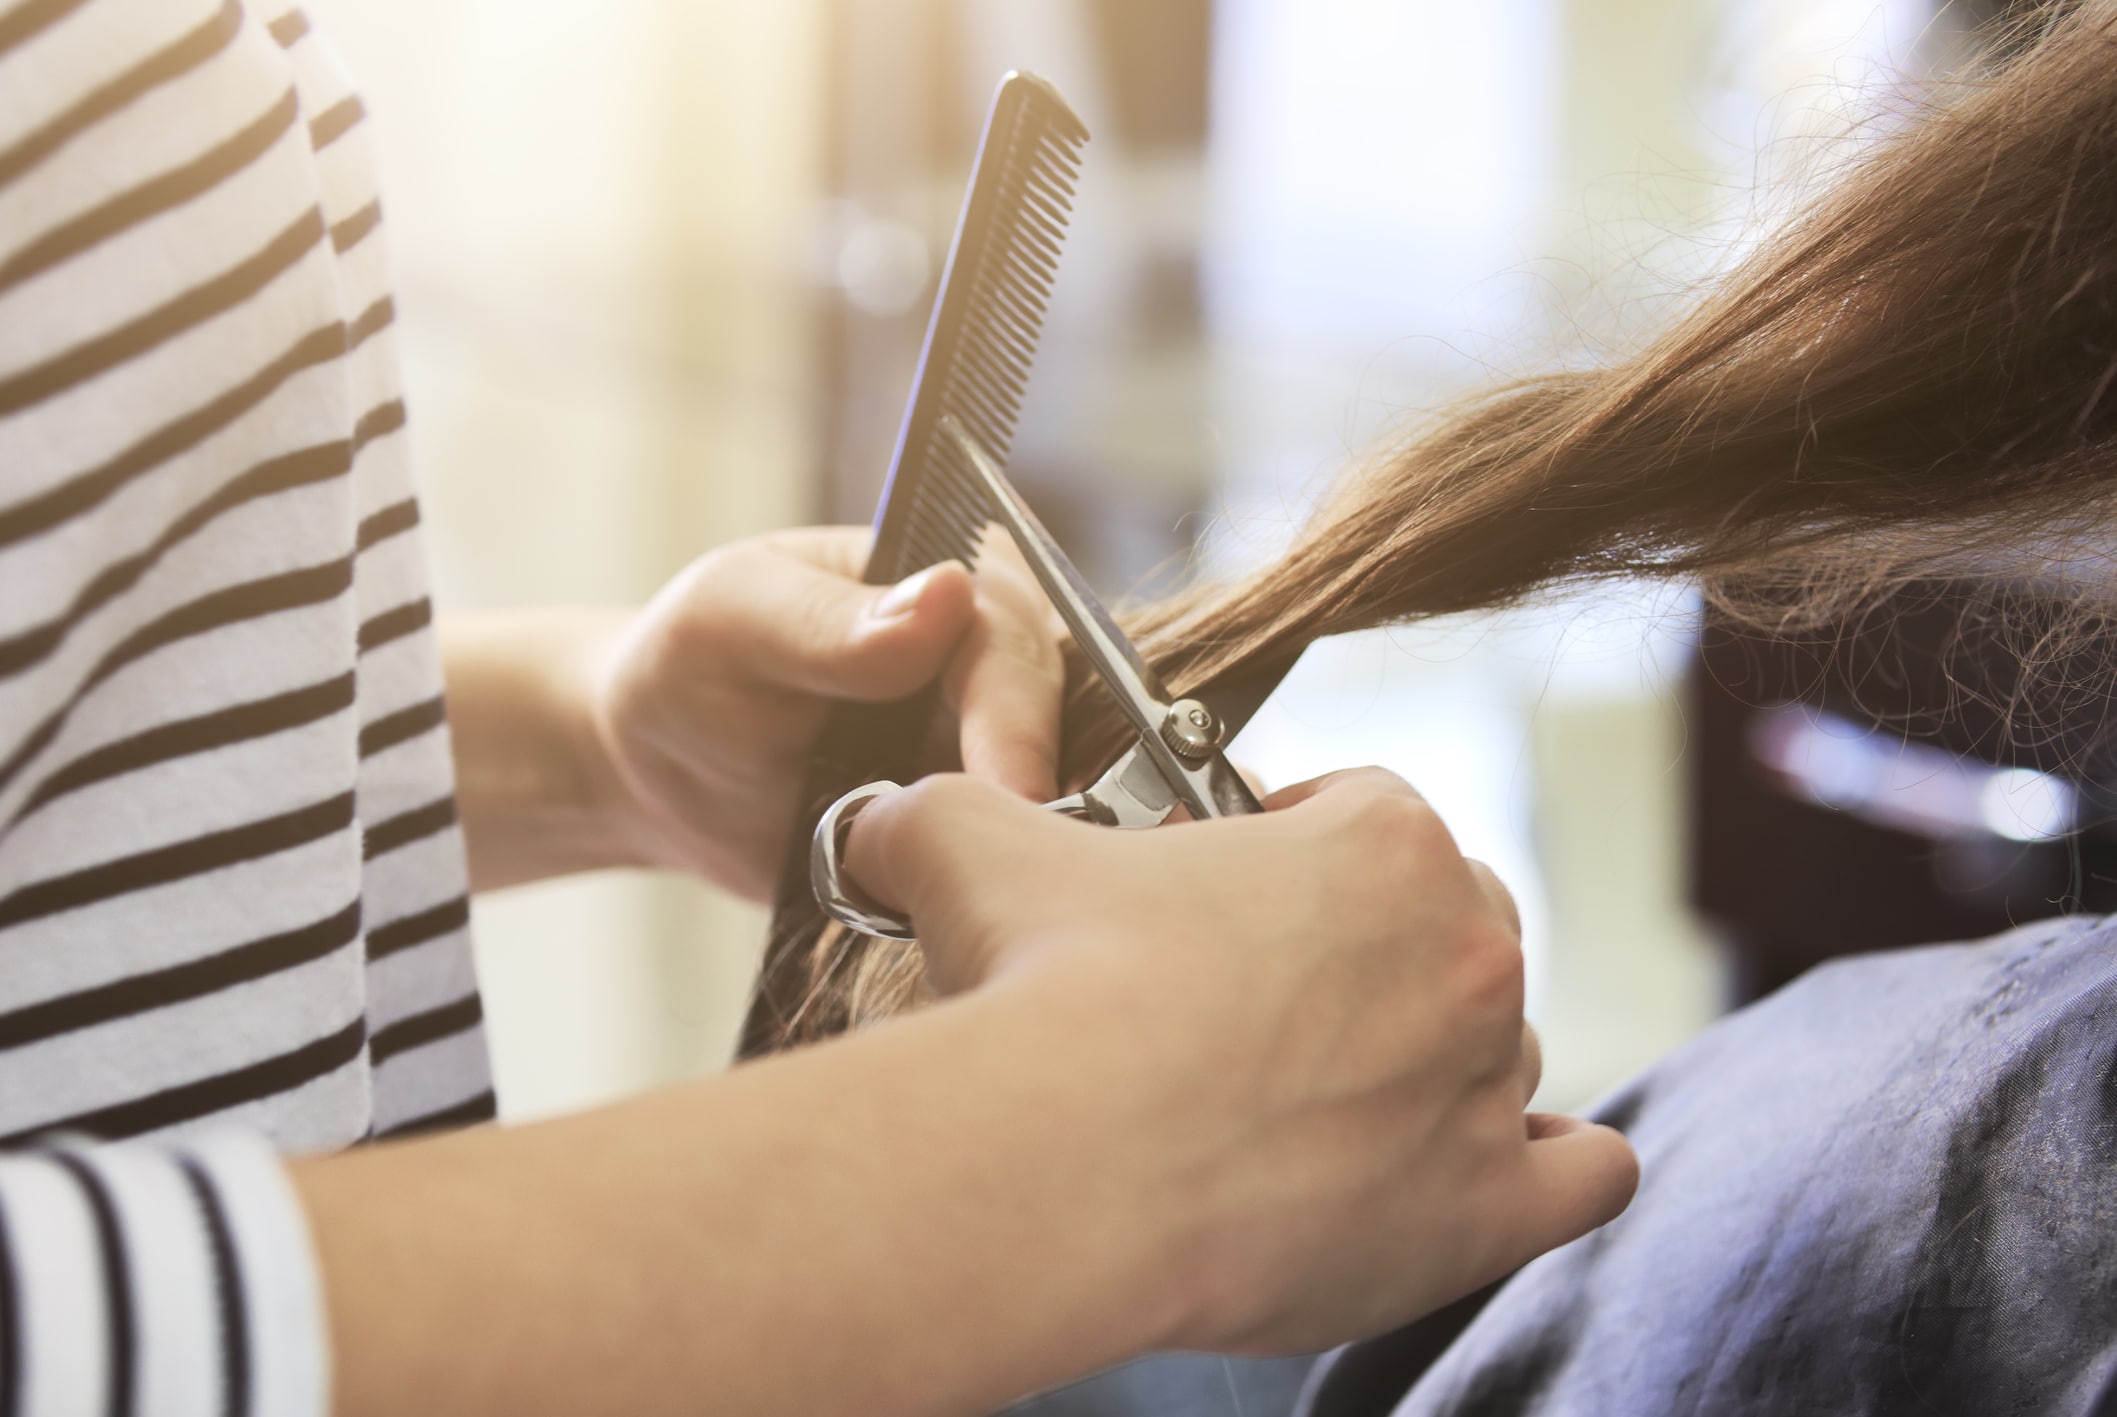  Cabeleireira cortando o cabelo de uma mulher